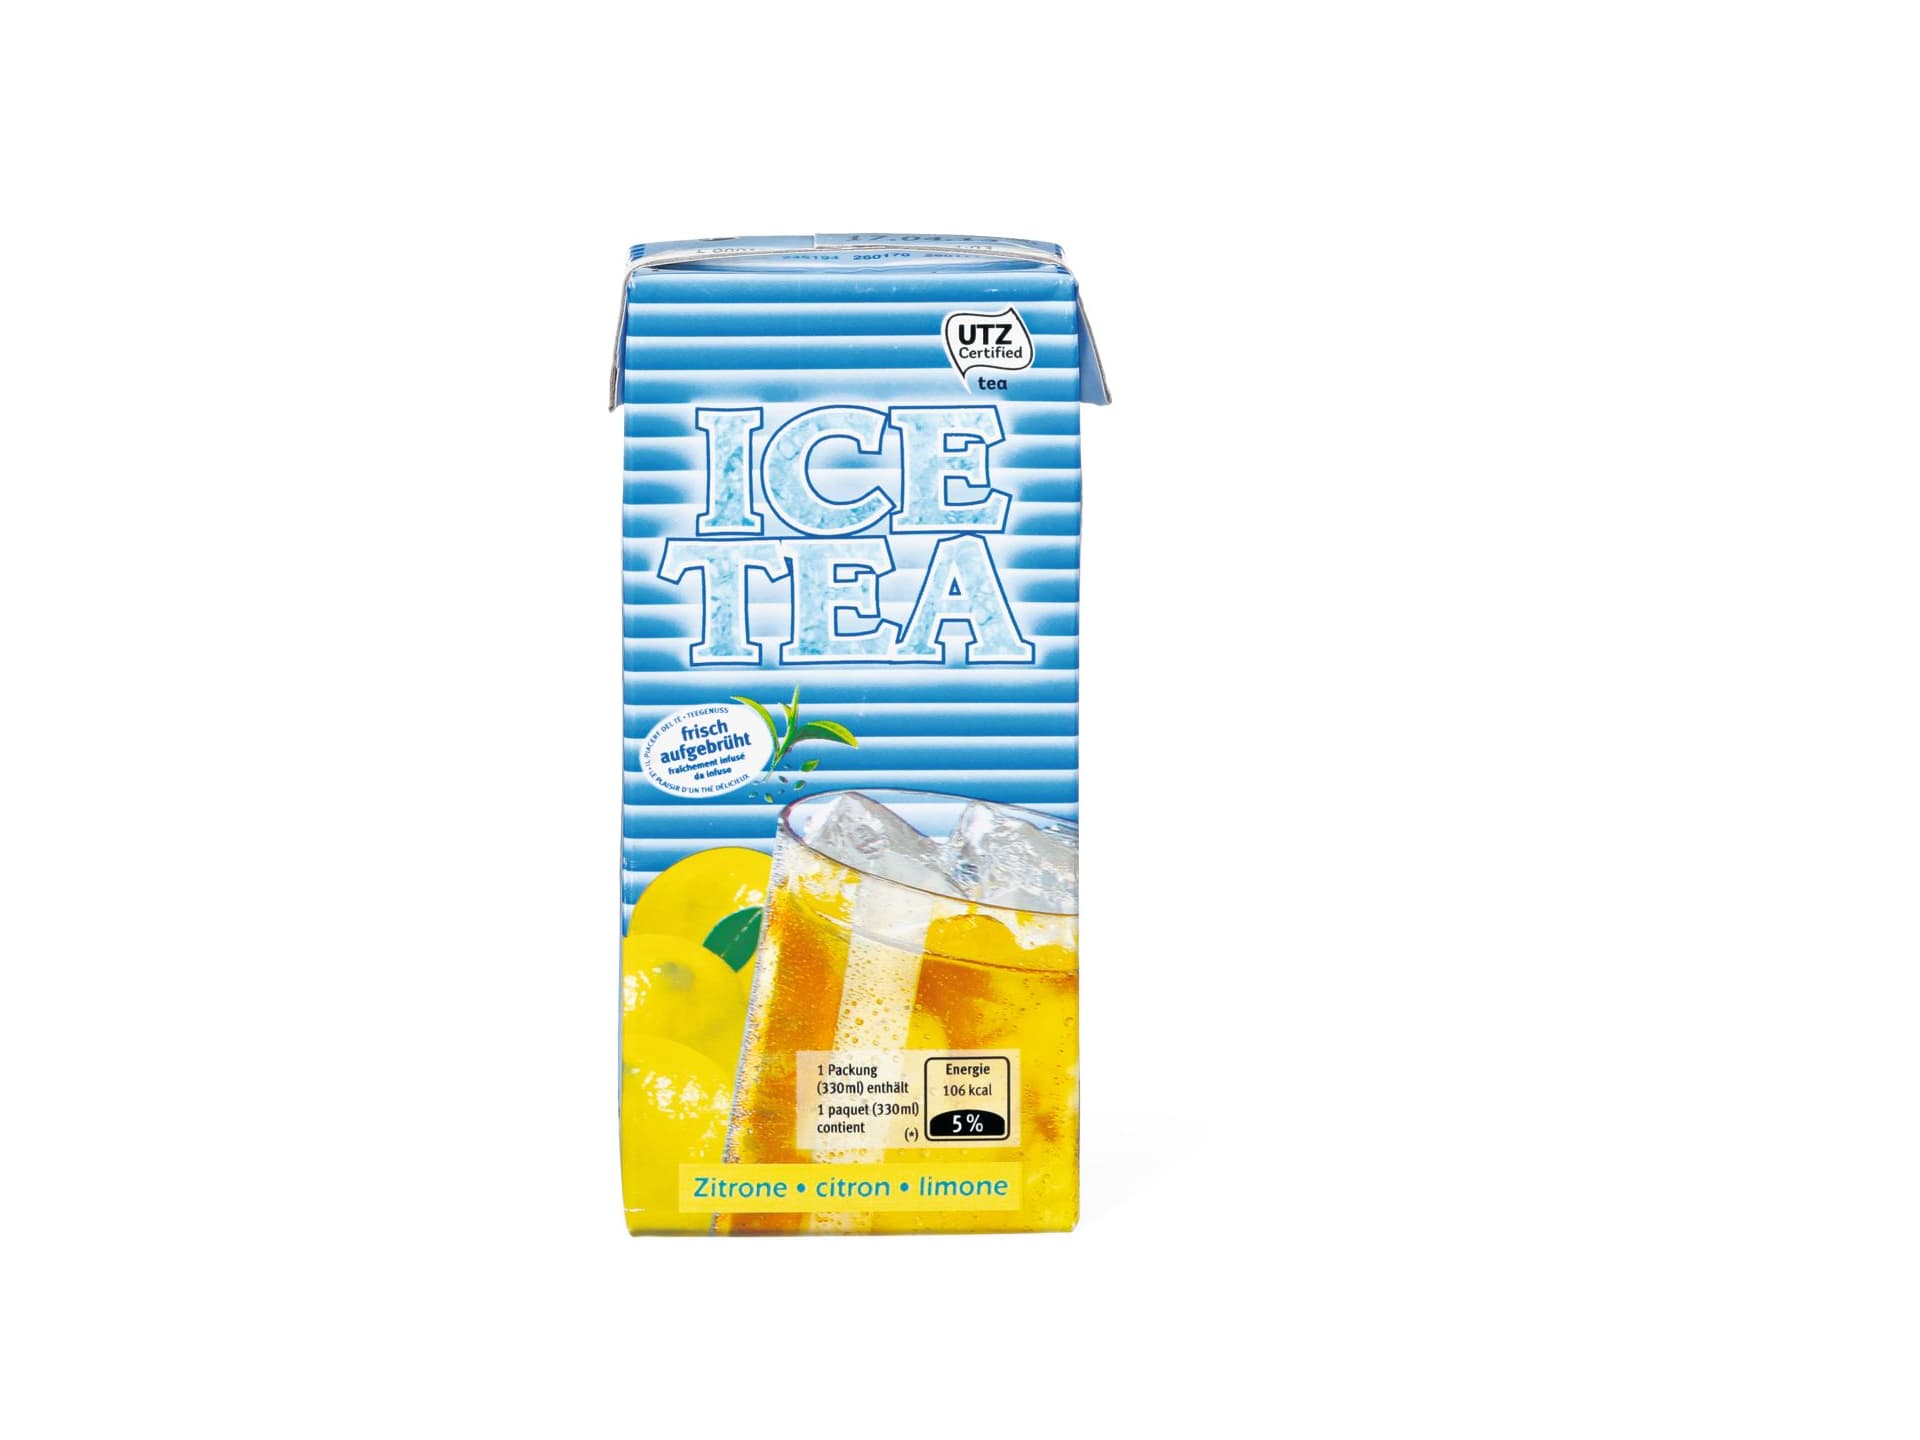 Kaufen Ice Tea · Eistee · Zitrone • Migros